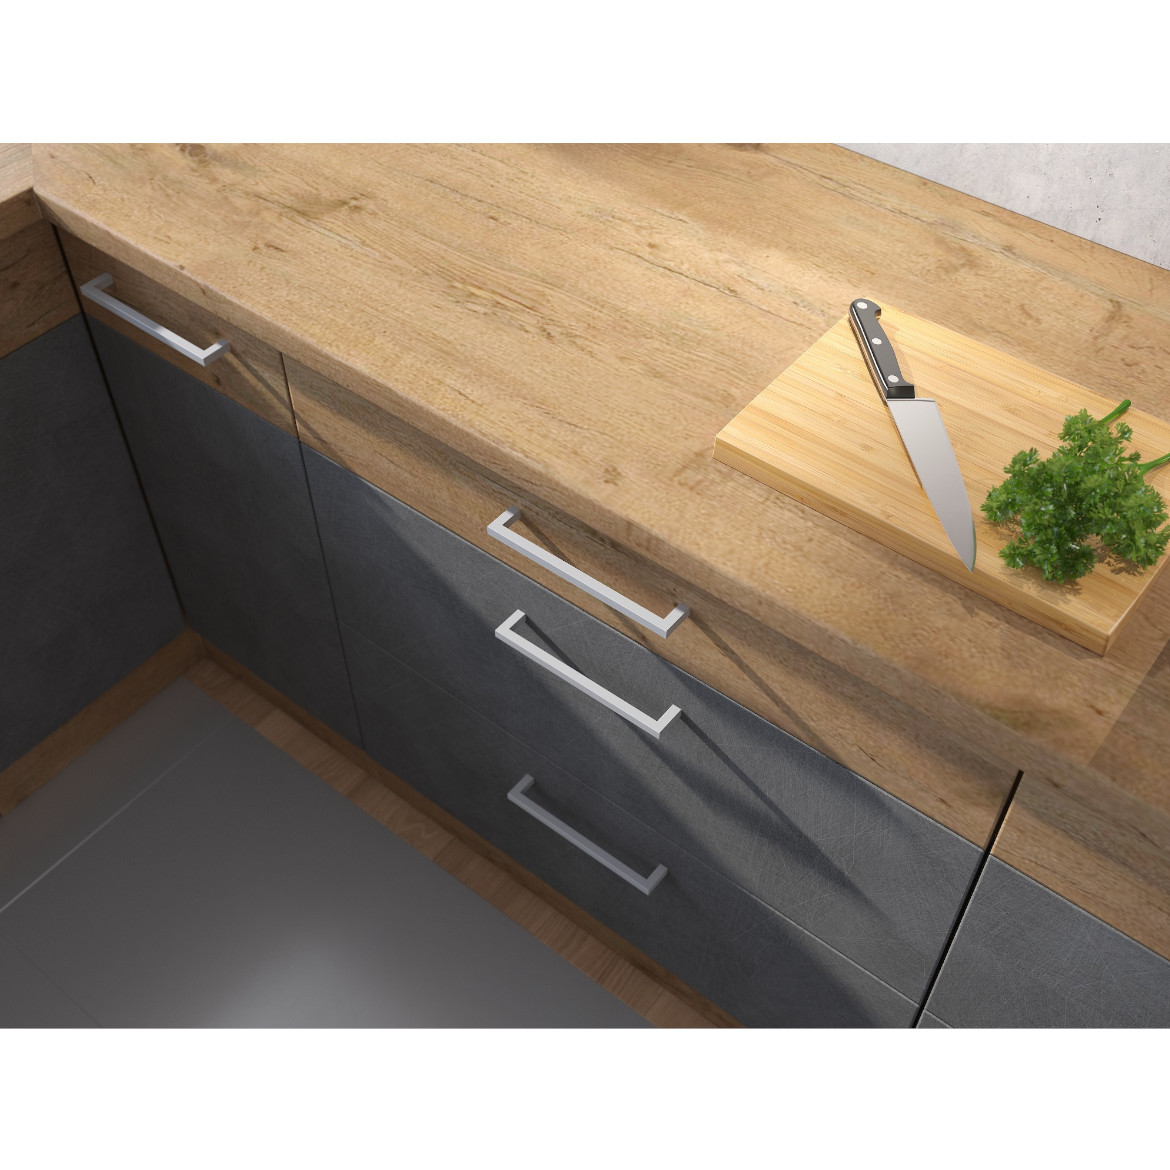 Küchenzeile Vigo 260cm Graphit matt mit Tischplatte